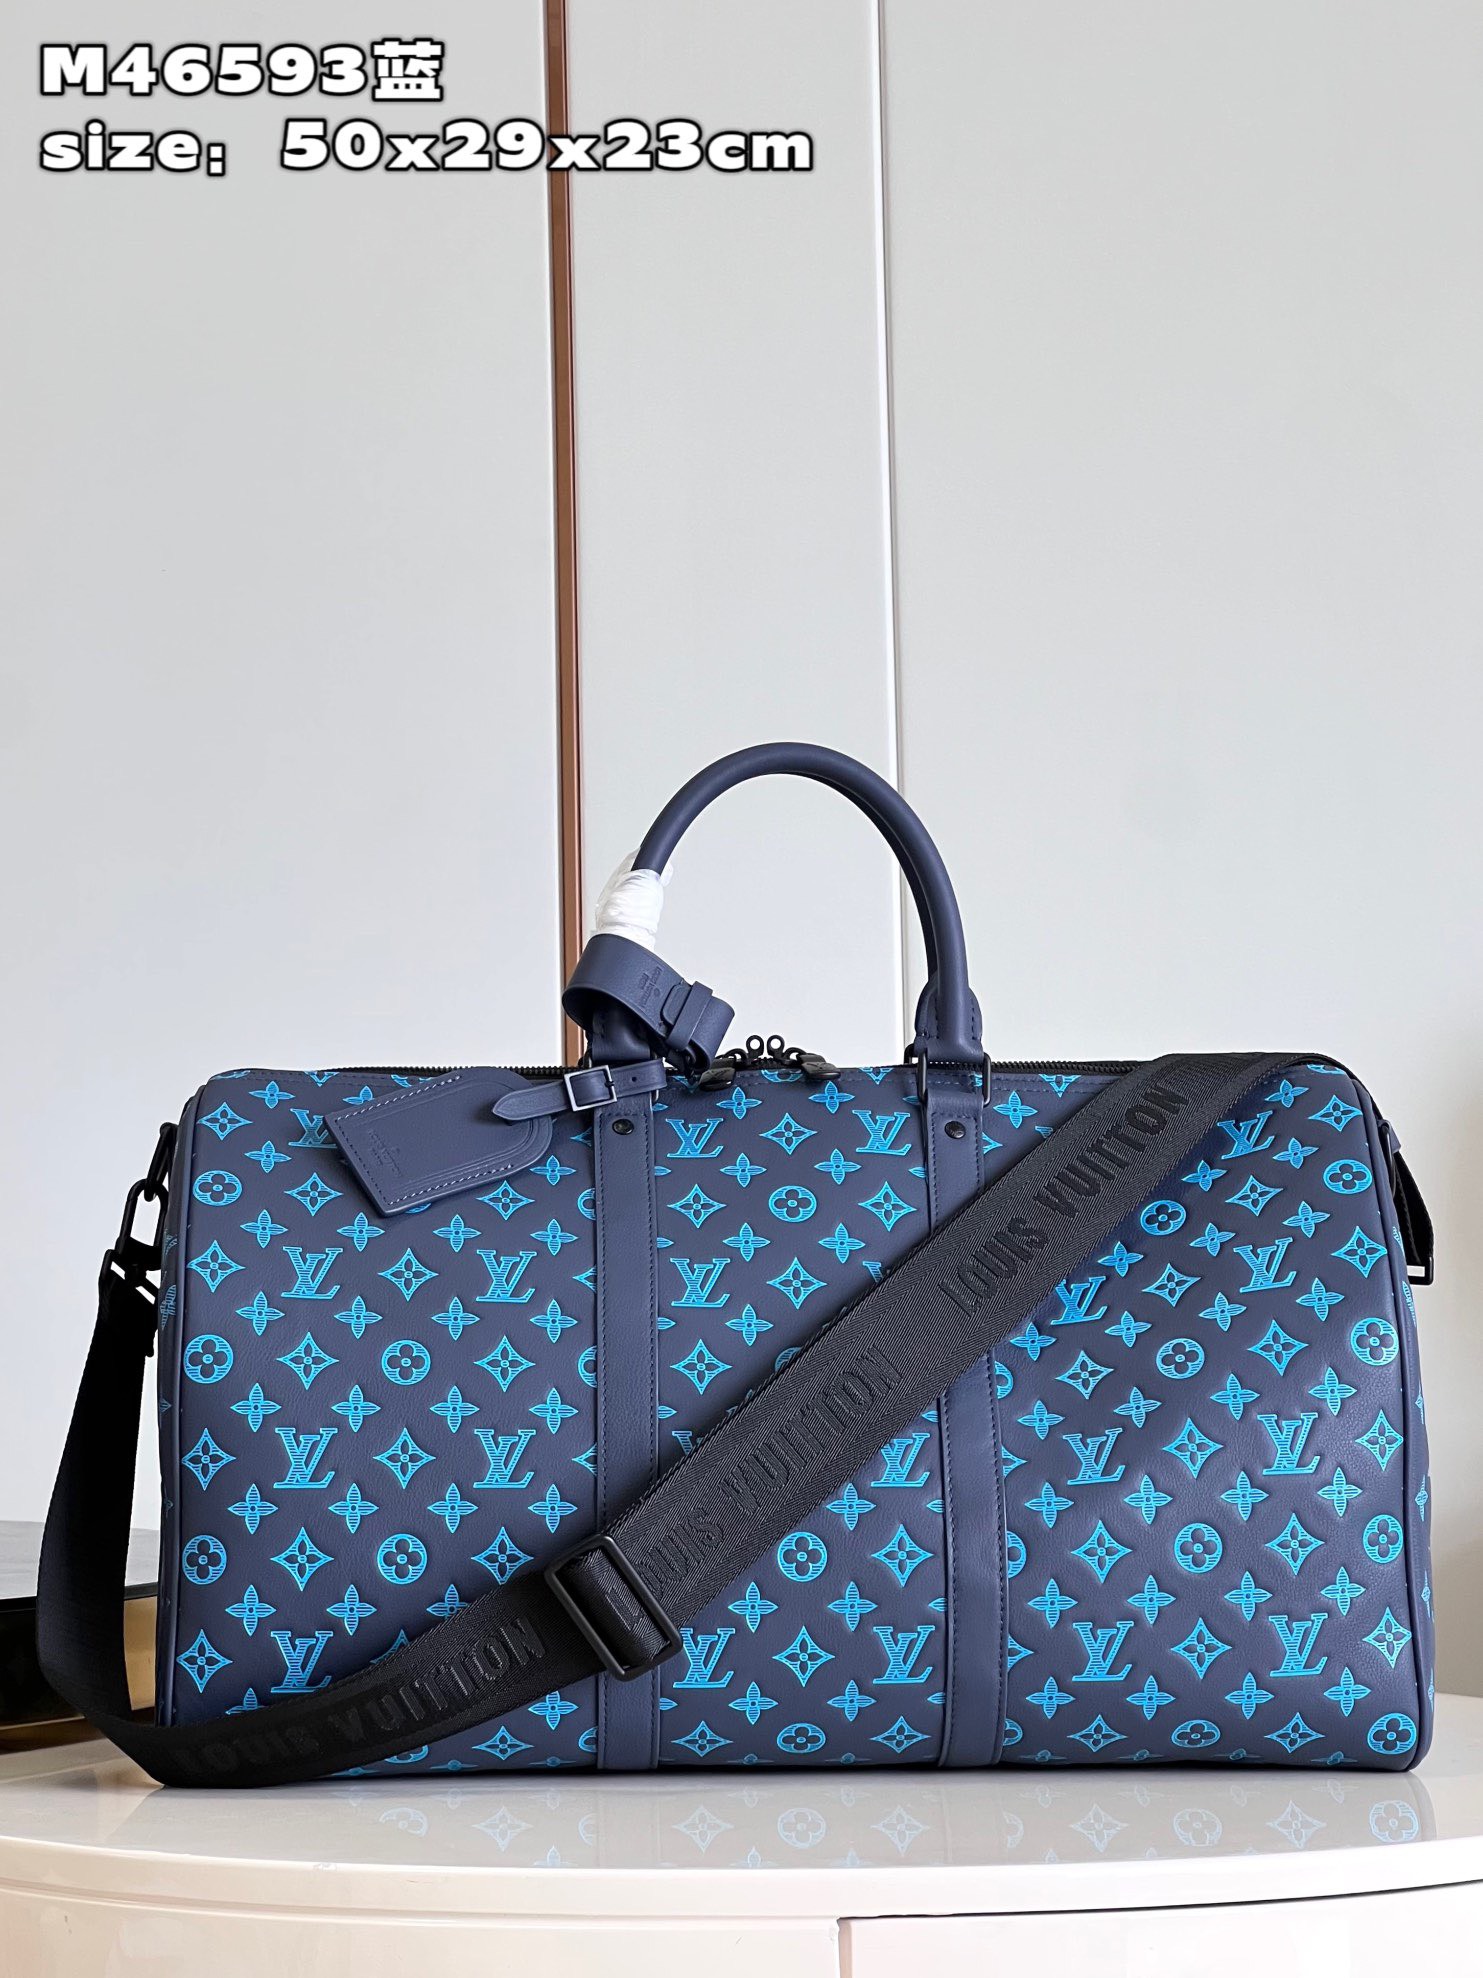 Túi xách Louis Vuitton Siêu Cấp RLCLV2678